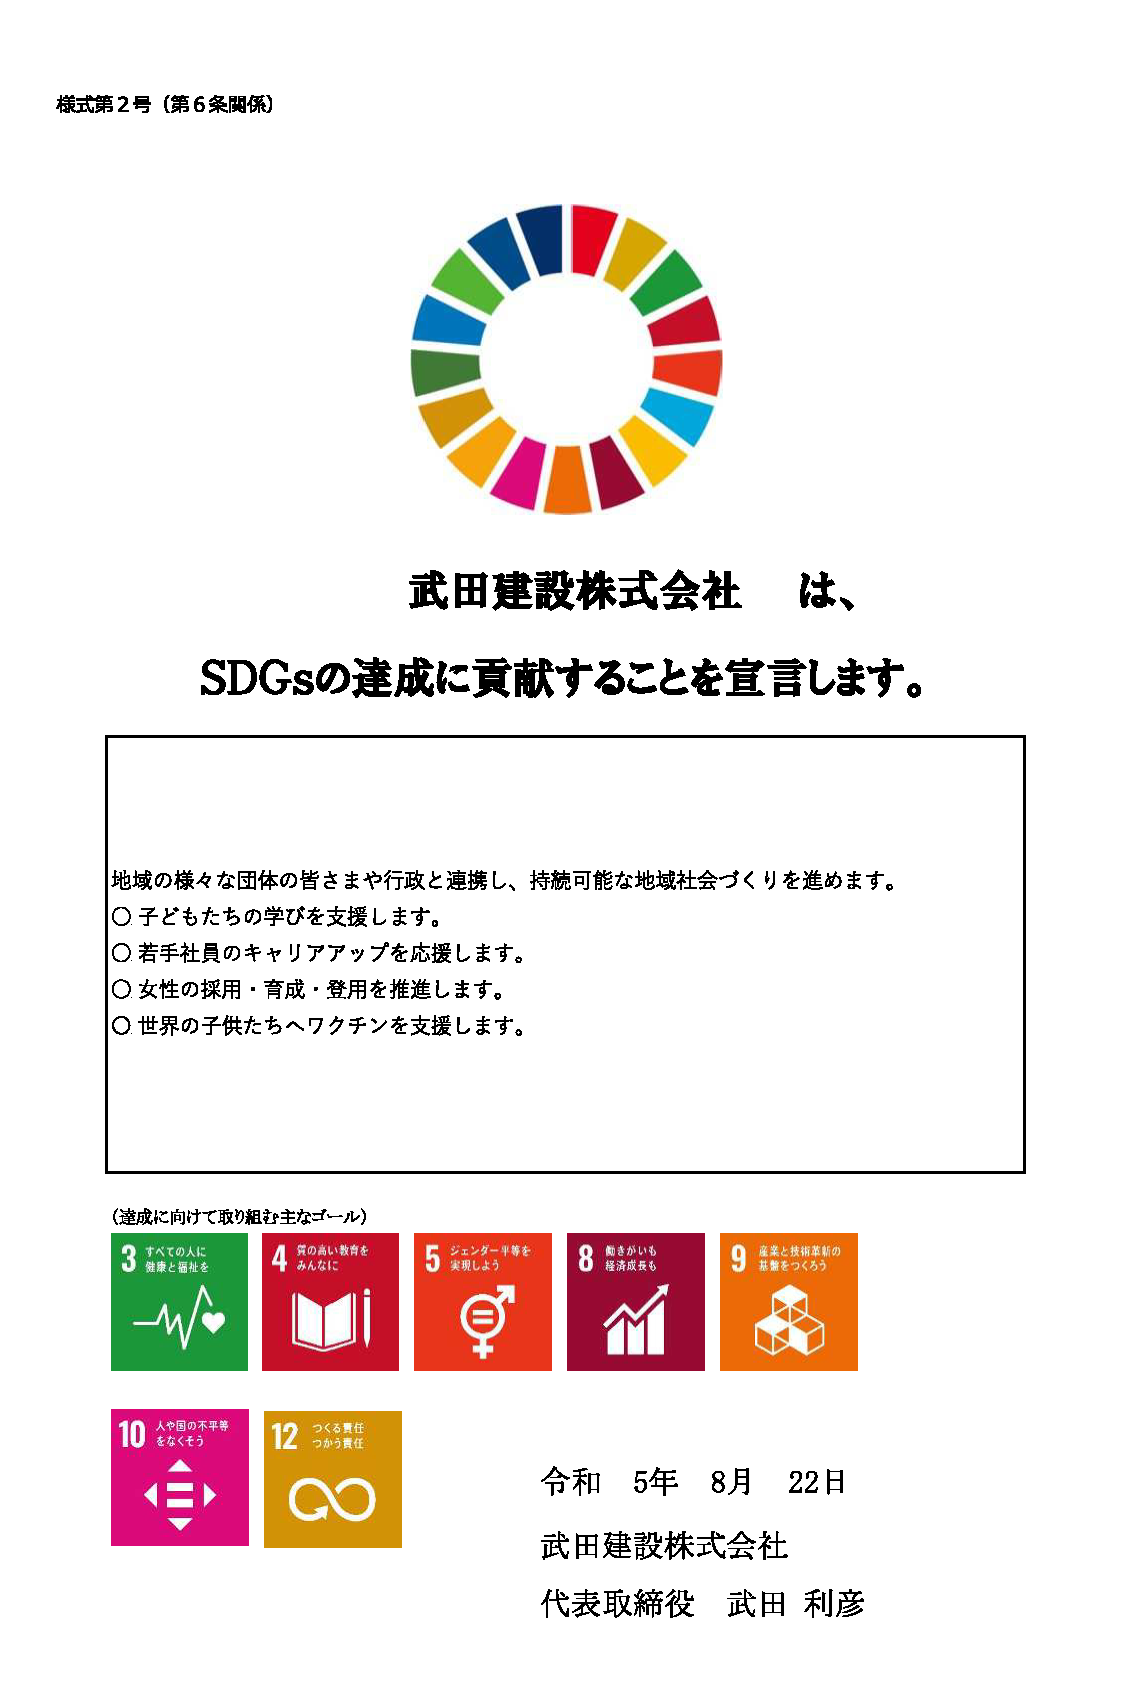 武田建設株式会社は、SDGsの達成に貢献することを宣言します